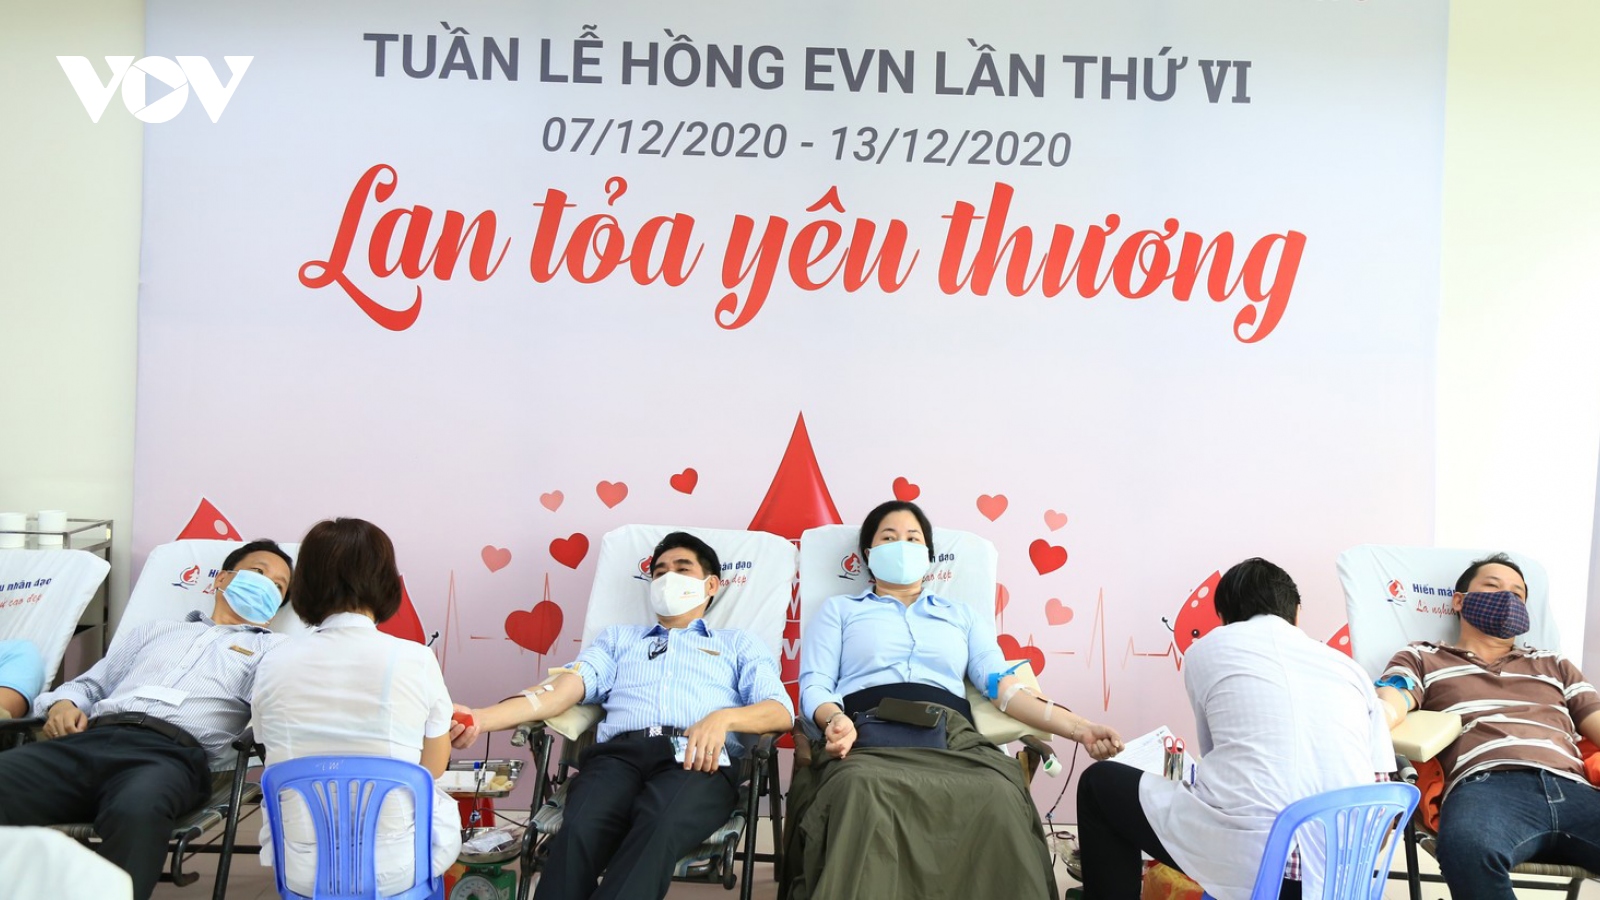 Hơn 450 người tham gia hiến máu trong “Tuần lễ hồng EVN lần VI khu vực Đà Nẵng”